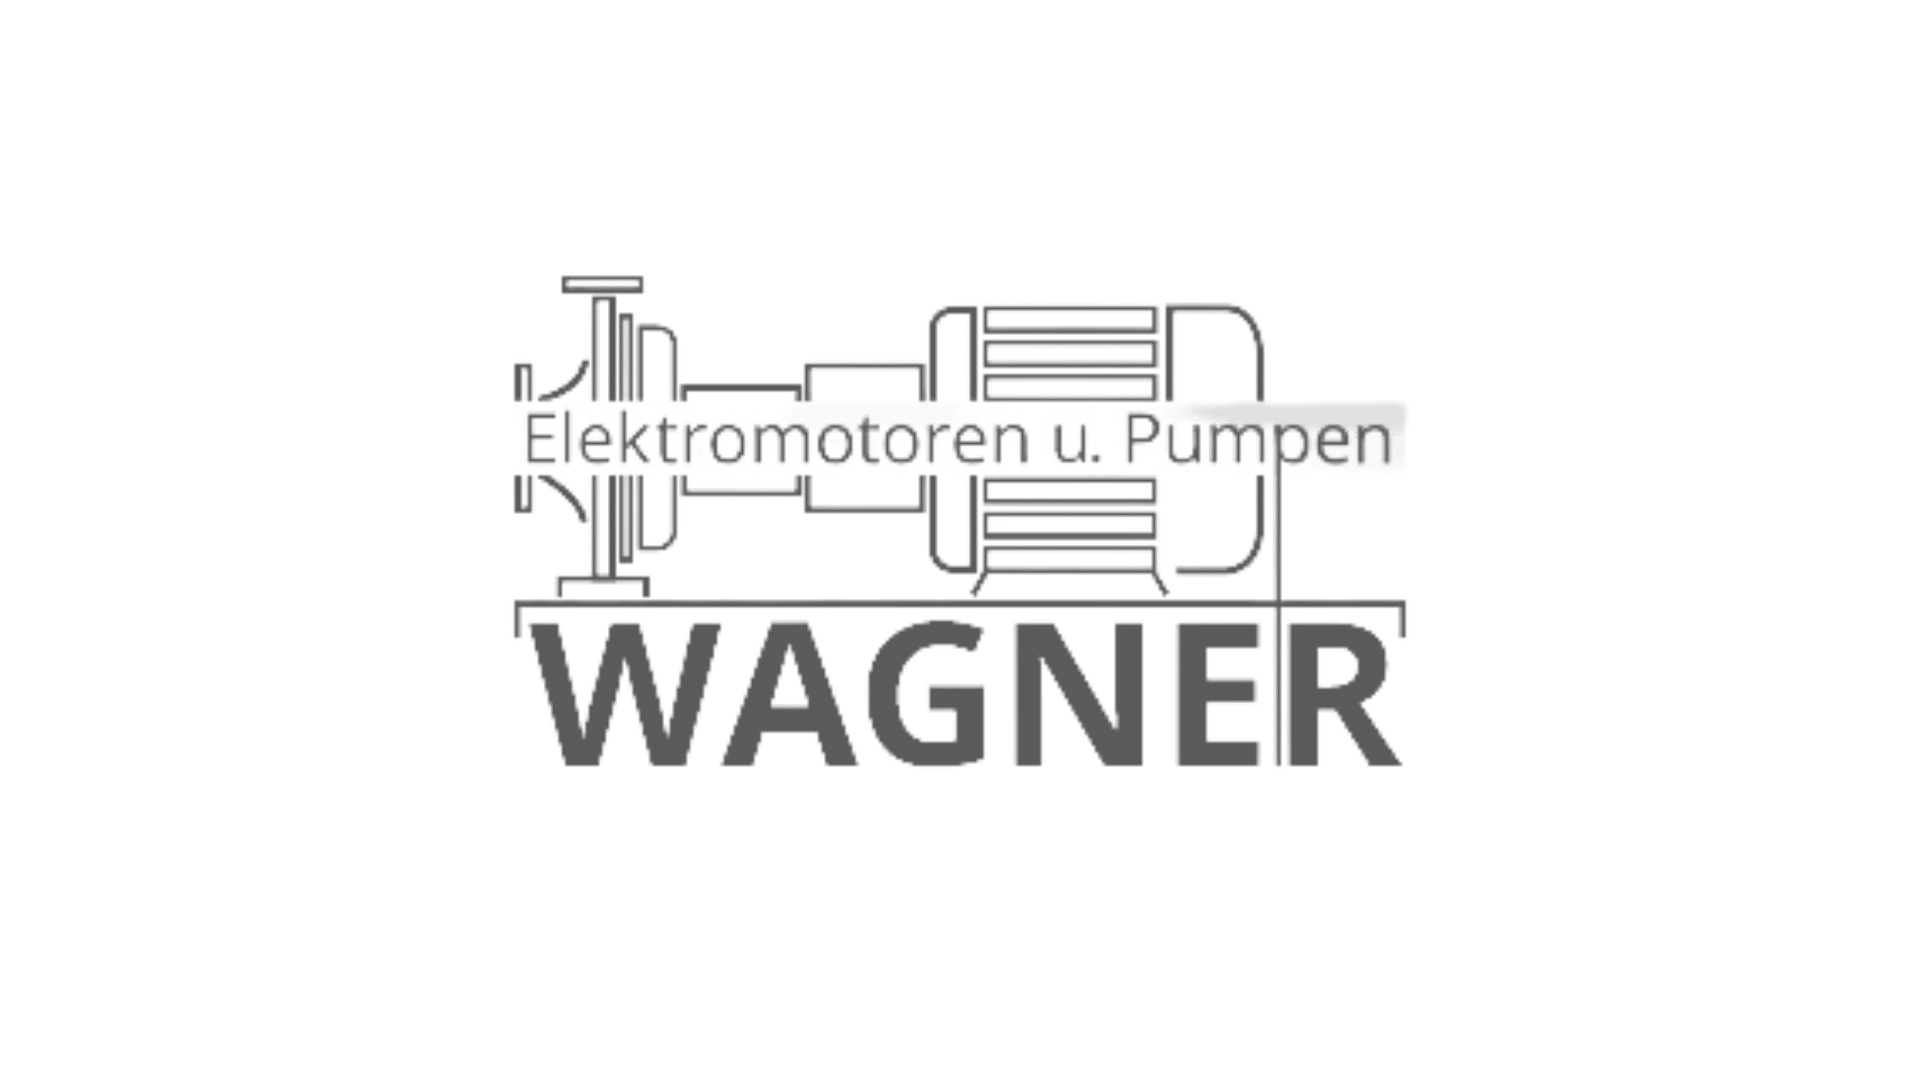 Logo Wagner